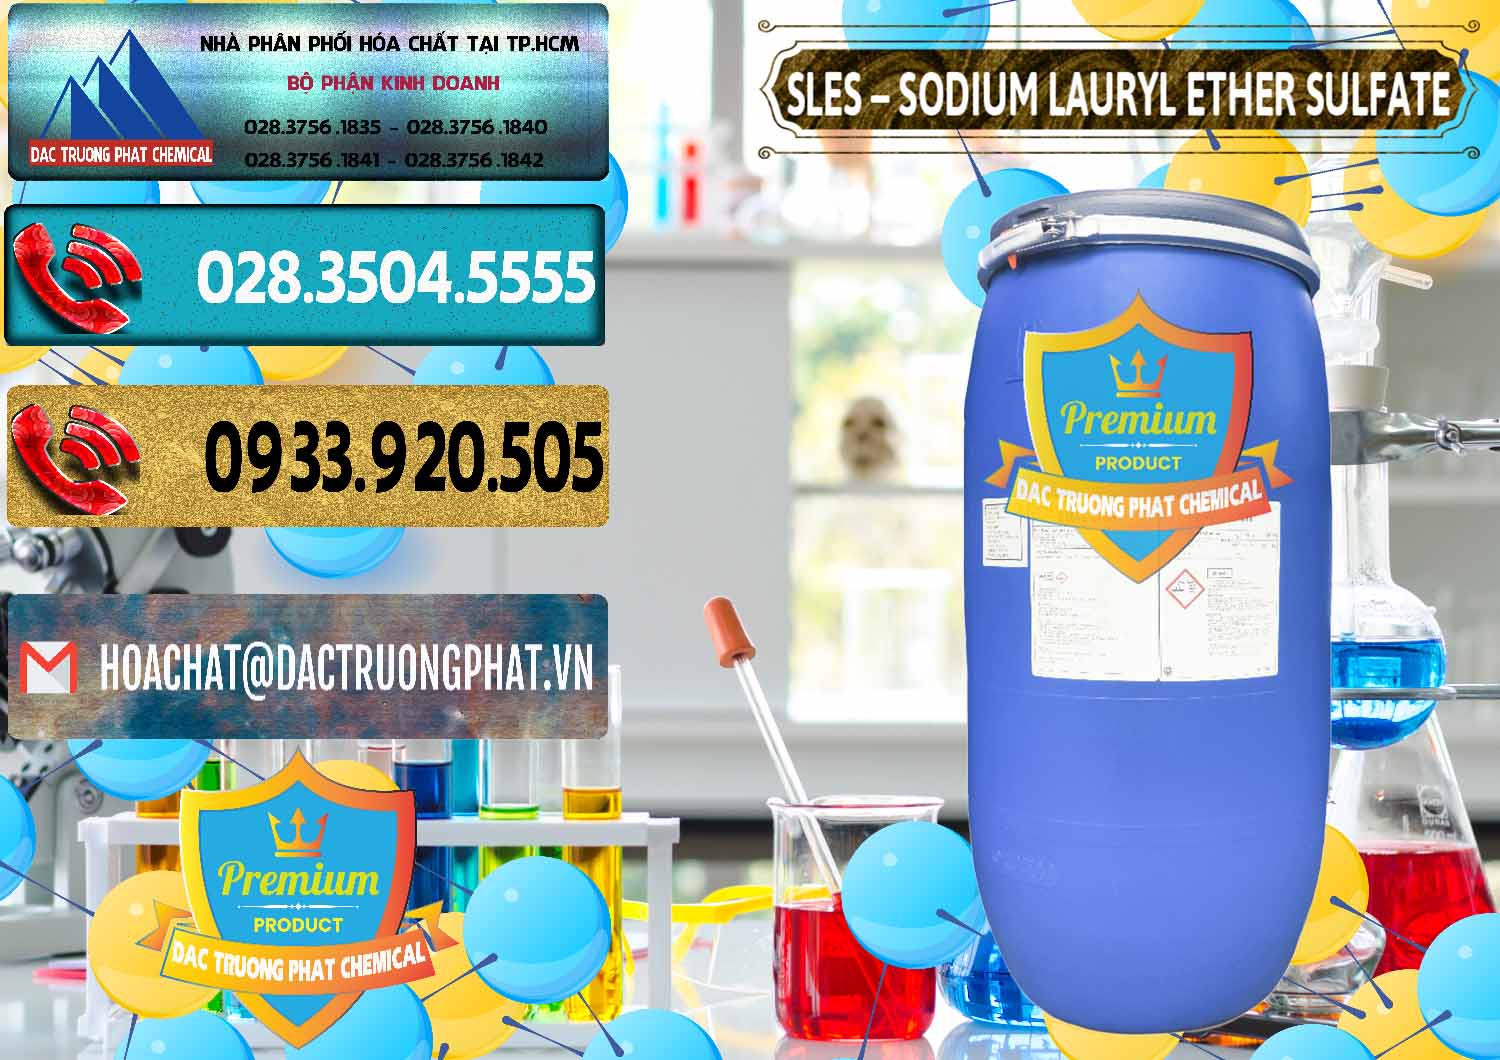 Đơn vị chuyên bán ( cung cấp ) Chất Tạo Bọt Sles - Sodium Lauryl Ether Sulphate Kao Indonesia - 0046 - Cty kinh doanh & cung cấp hóa chất tại TP.HCM - hoachatdetnhuom.com